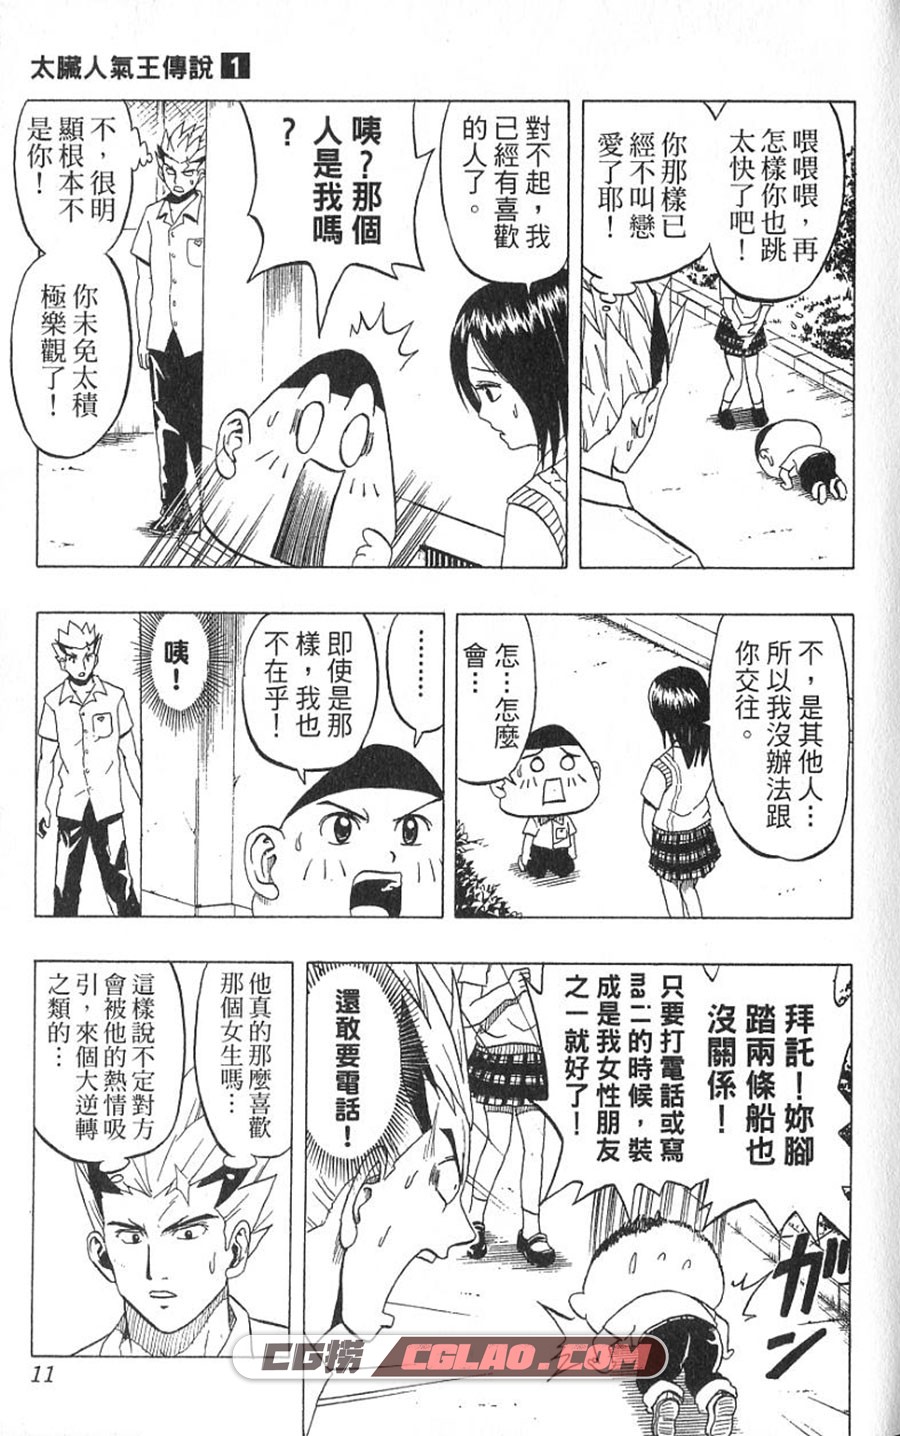 太脏人气王传说 大亚门 1-8卷 漫画完结全集下载 百度网盘,01-005.jpg